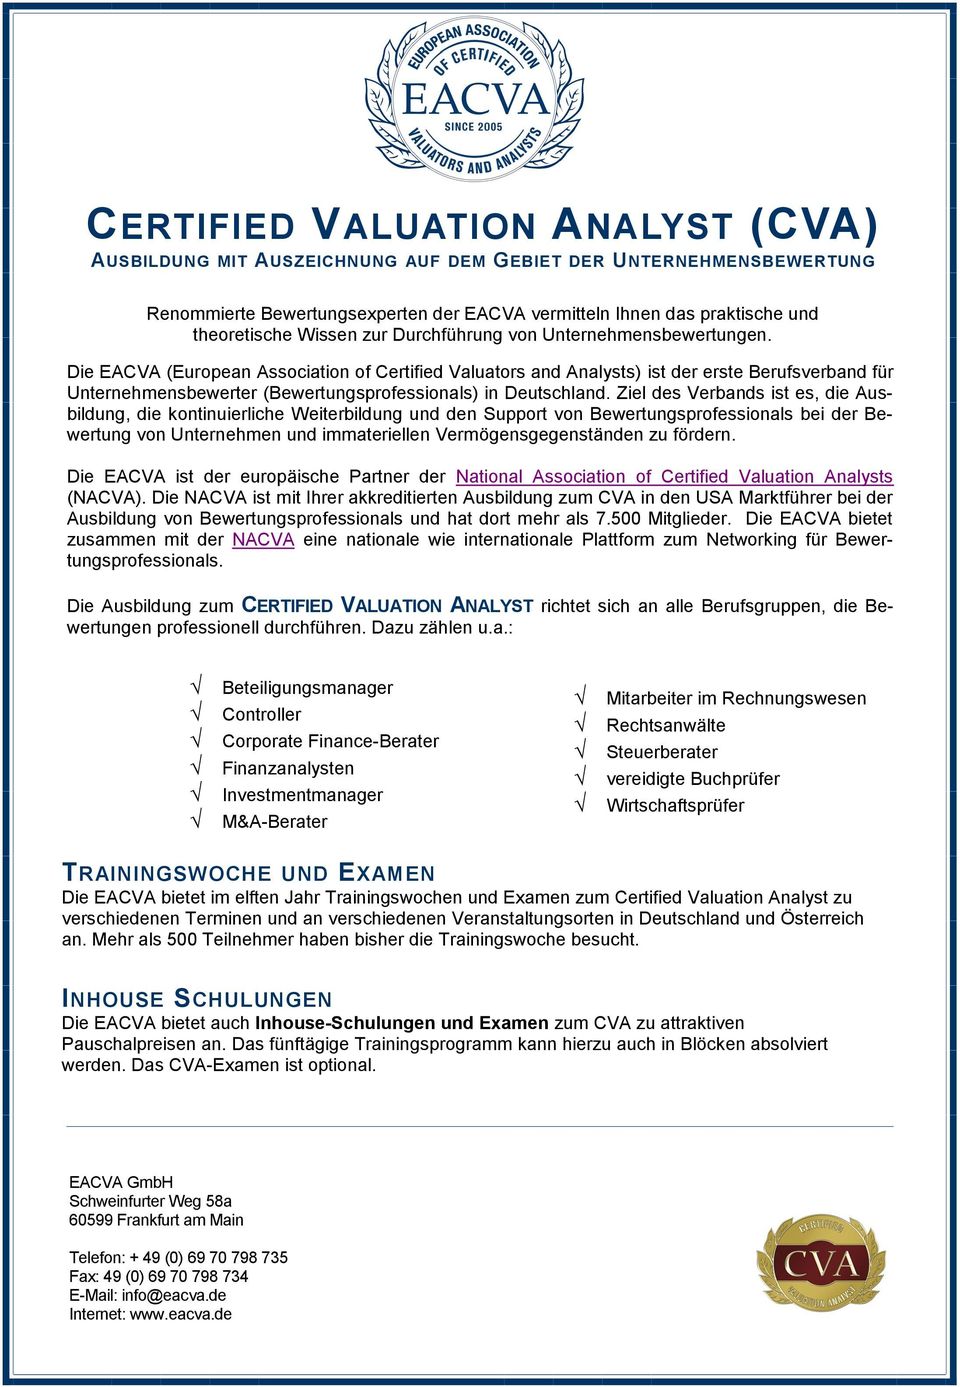 Die EACVA (European Association of Certified Valuators and Analysts) ist der erste Berufsverband für Unternehmensbewerter (Bewertungsprofessionals) in Deutschland.